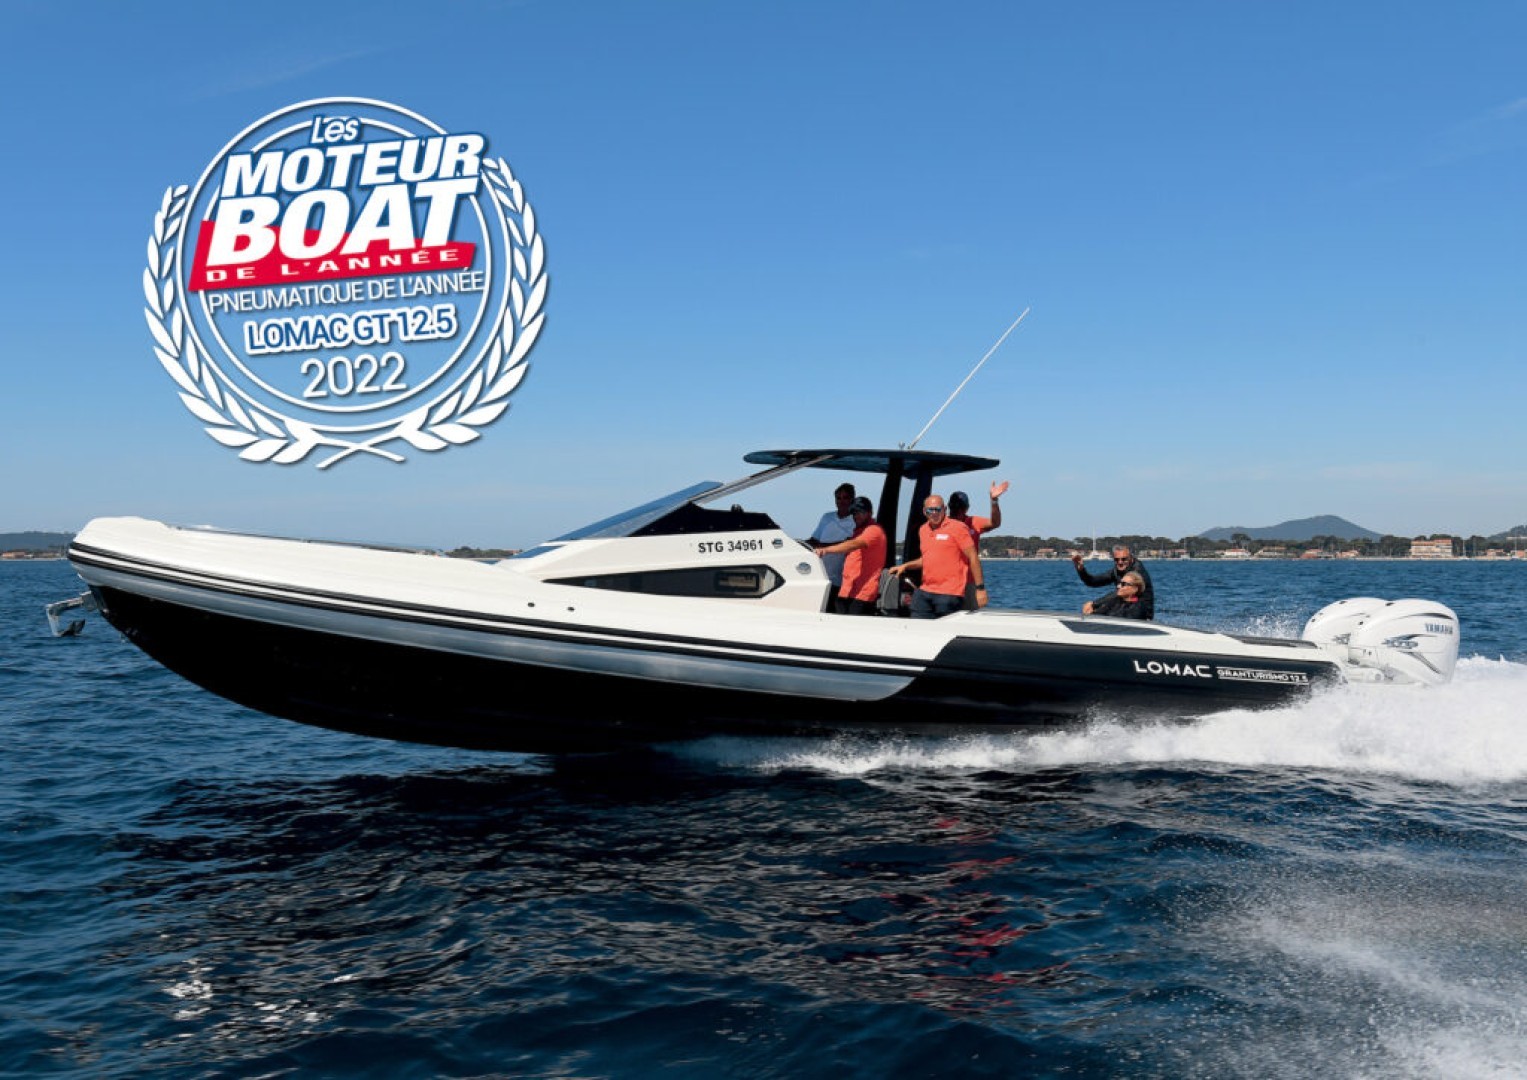 Lomac vince il premio “Barca dell’anno 2022” di Moteur Boat